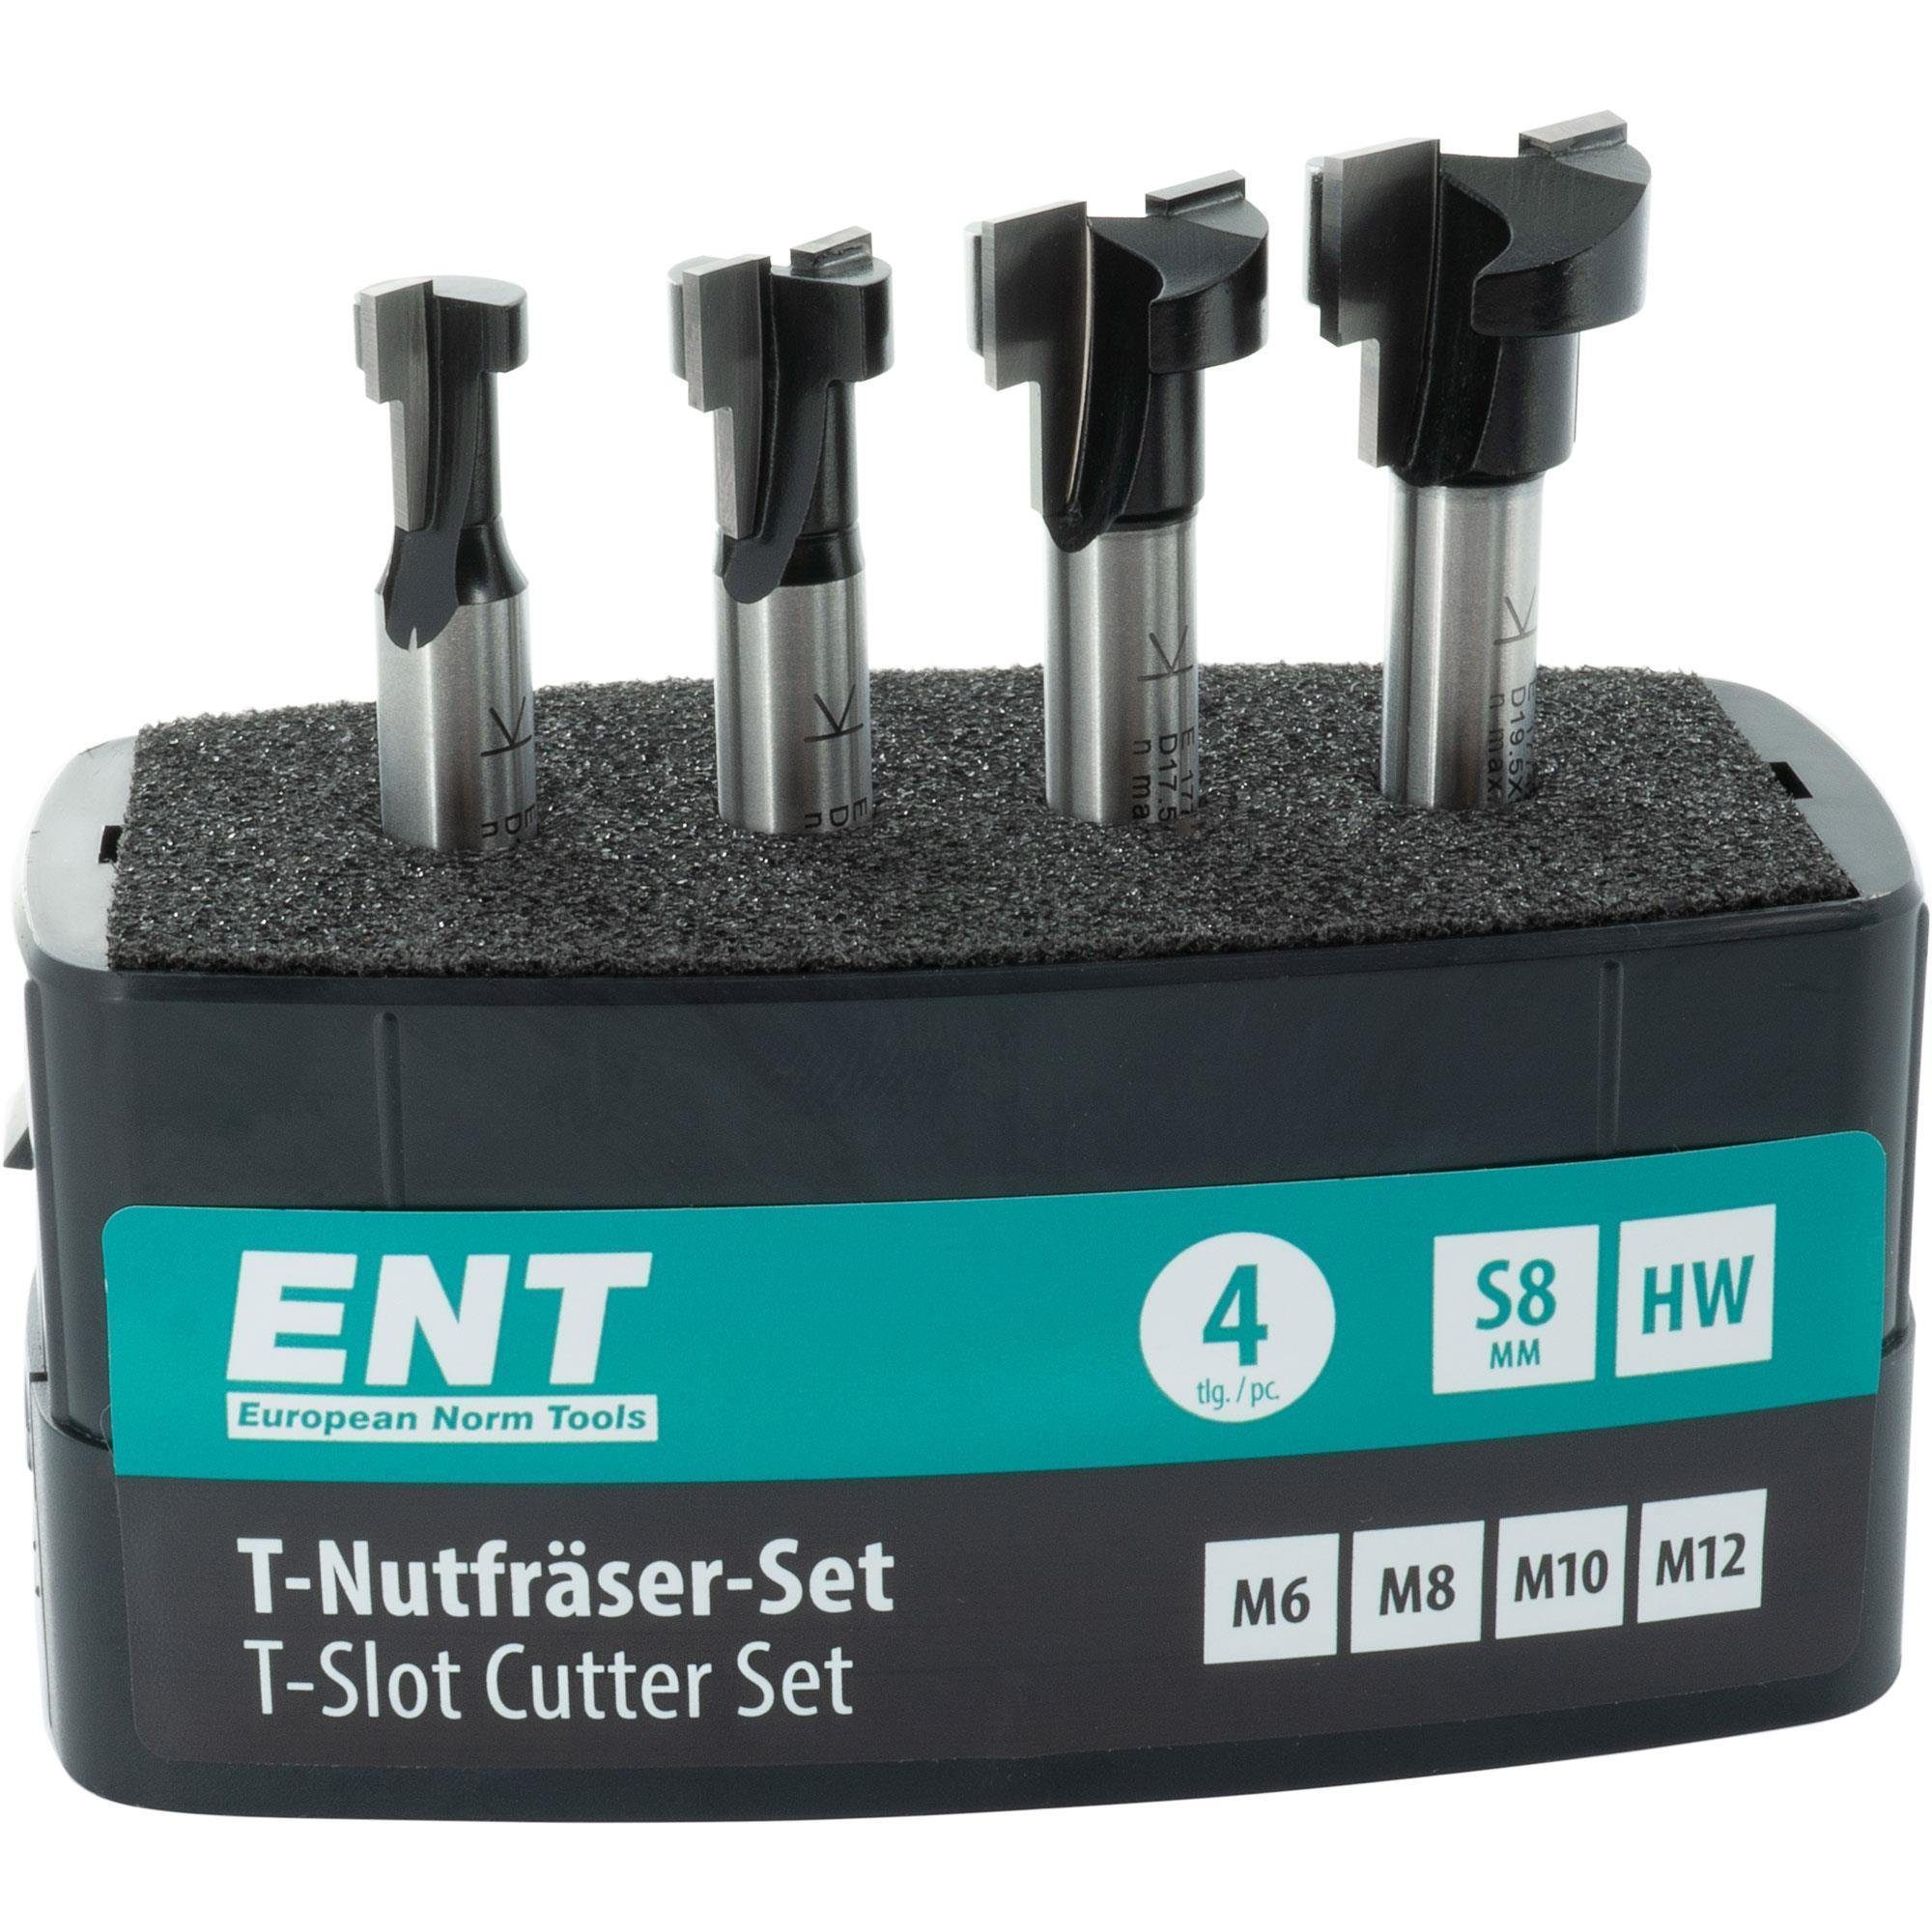 ENT European Norm Tools T-Nutfräser 09046 4-tlg. T-Nutfräser-Set, für M6, M8, M10 und M12 Sechskantschrauben - Schaft Ø 8 mm, Hartmetall